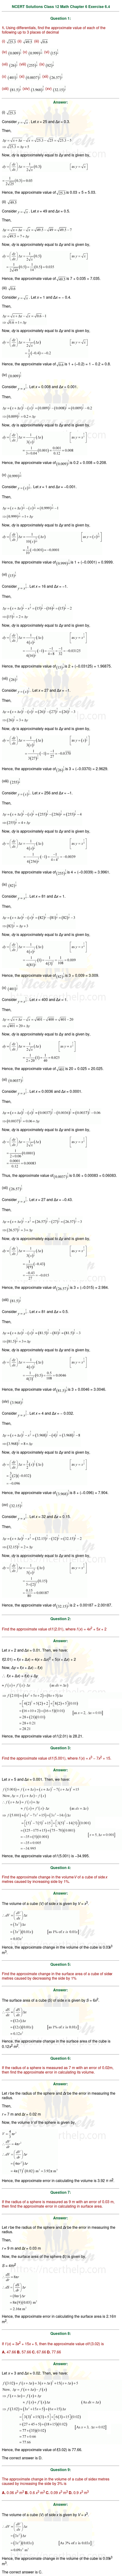 ex.6.4 Class 12 Math Chapter 6 ncert solutions